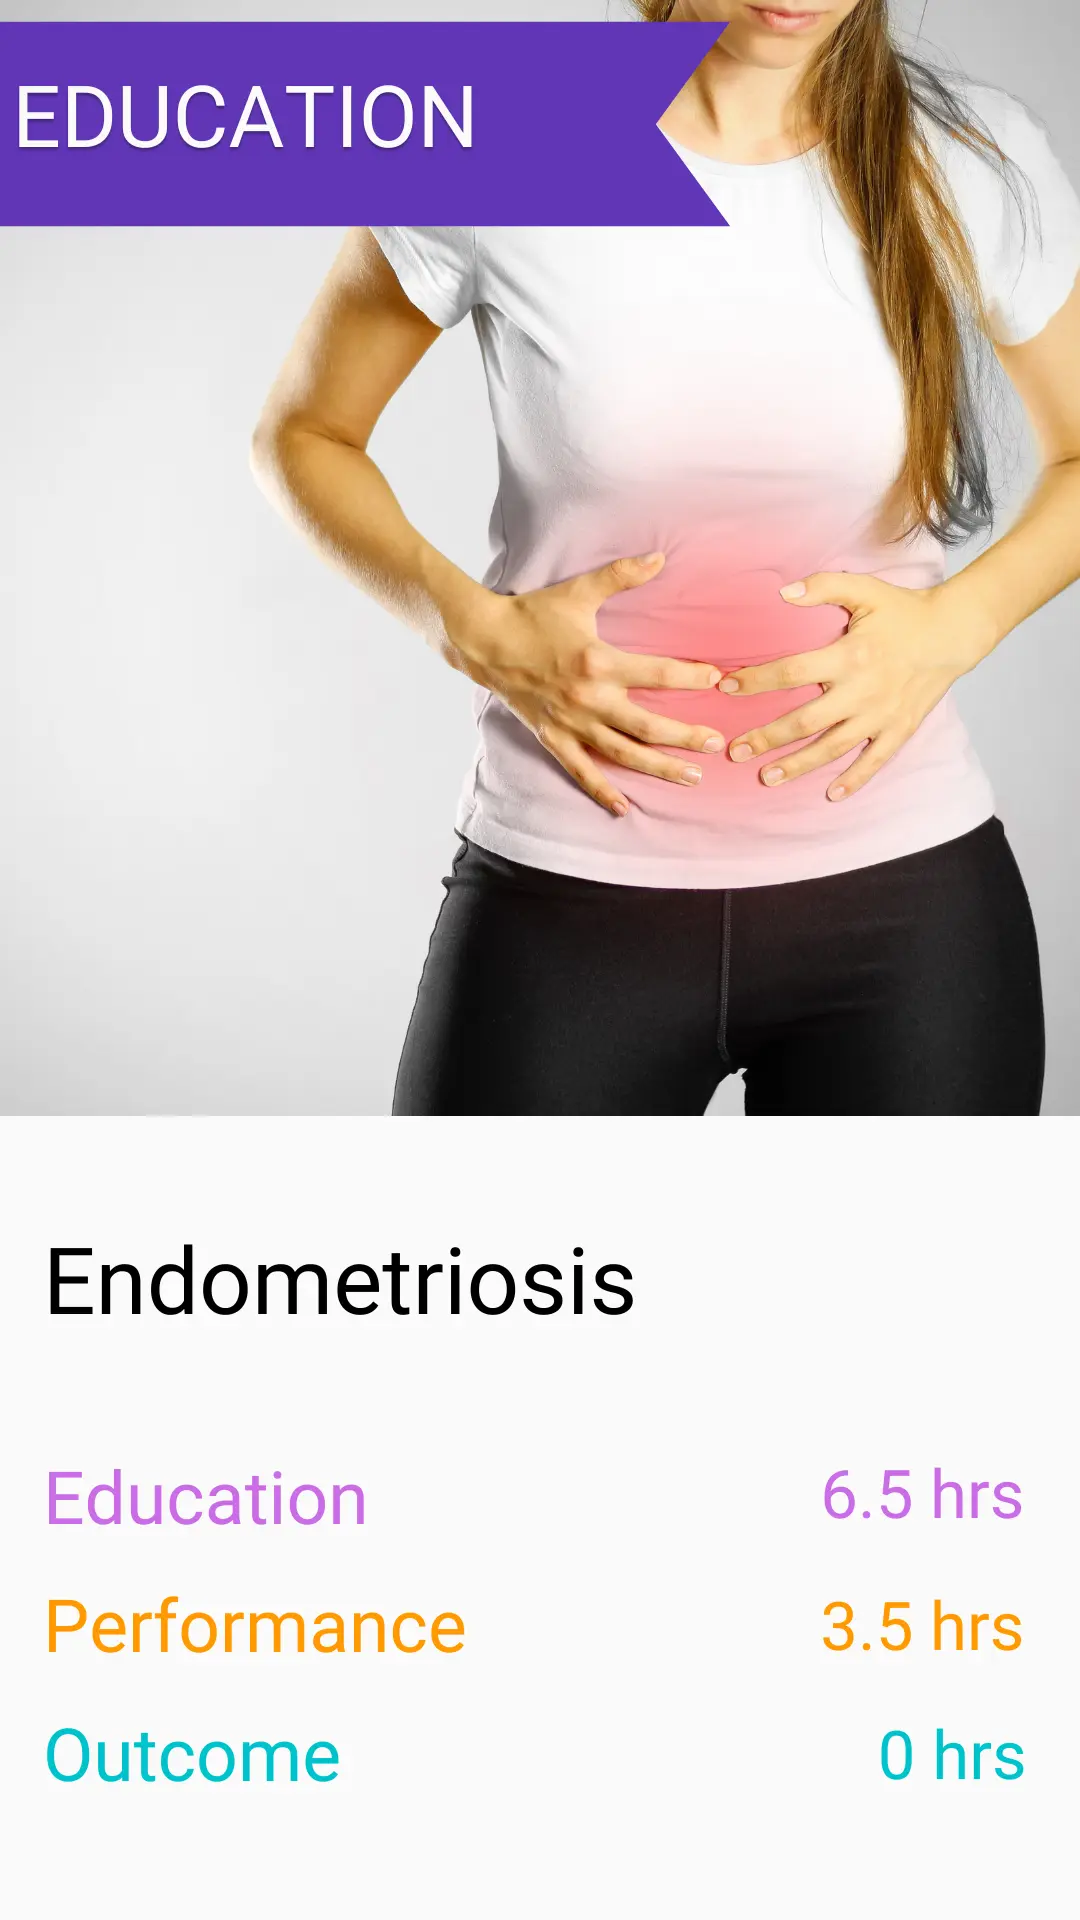 HC365 endometriosis activity example